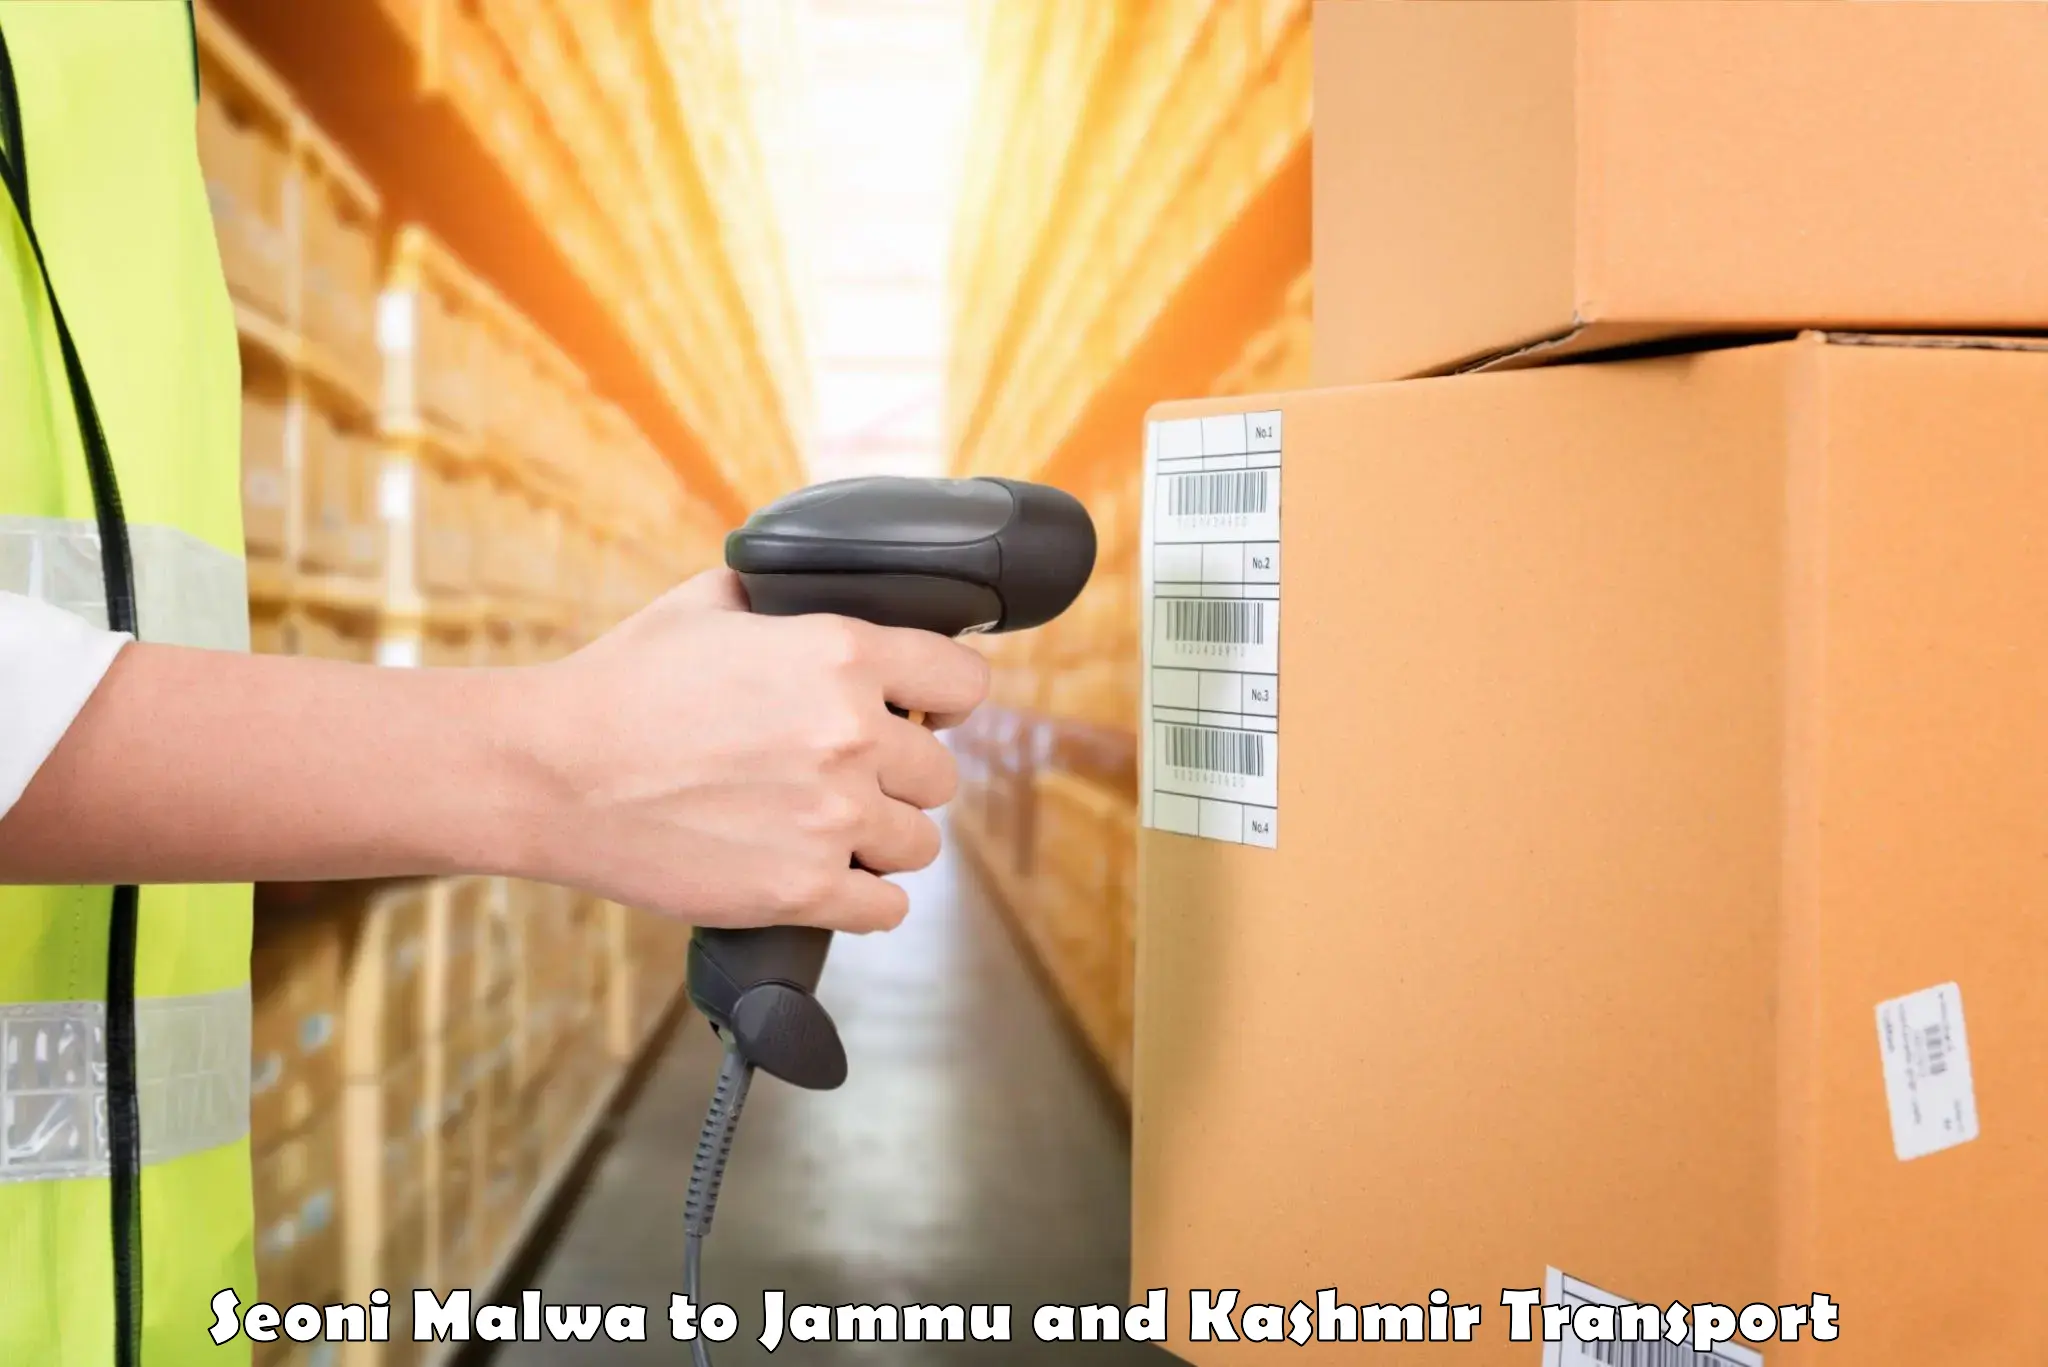 Transport shared services Seoni Malwa to University of Jammu